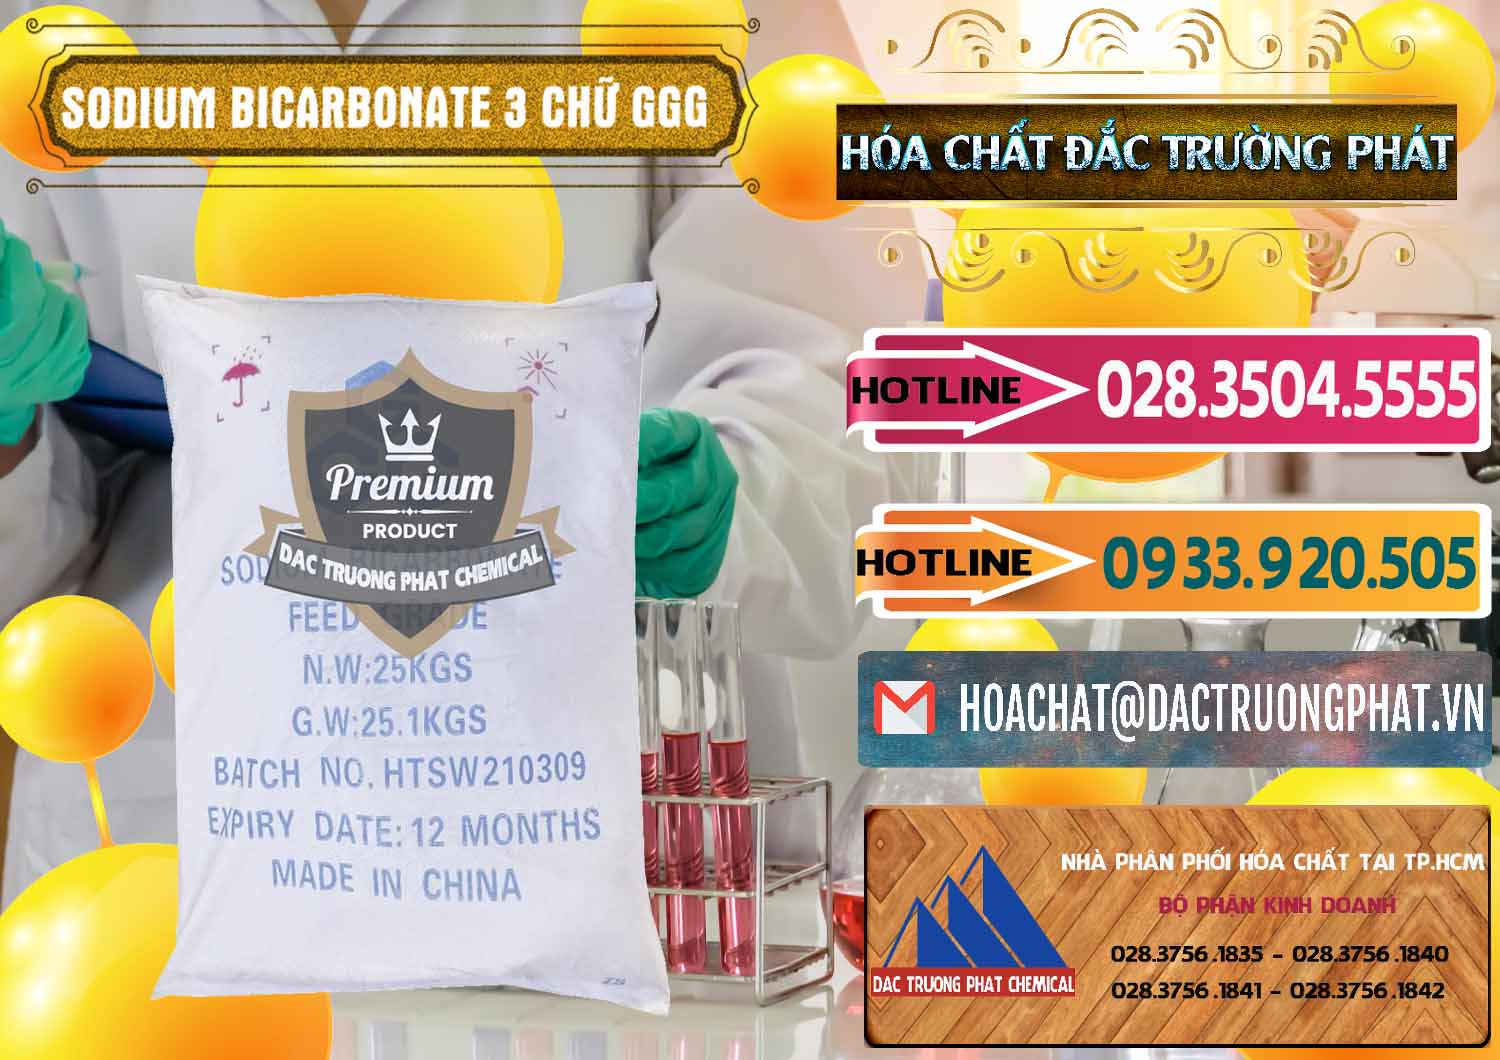 Cung cấp và bán Sodium Bicarbonate – Bicar NaHCO3 Food Grade 3 Chữ GGG Trung Quốc China - 0259 - Cty chuyên cung cấp và kinh doanh hóa chất tại TP.HCM - dactruongphat.vn